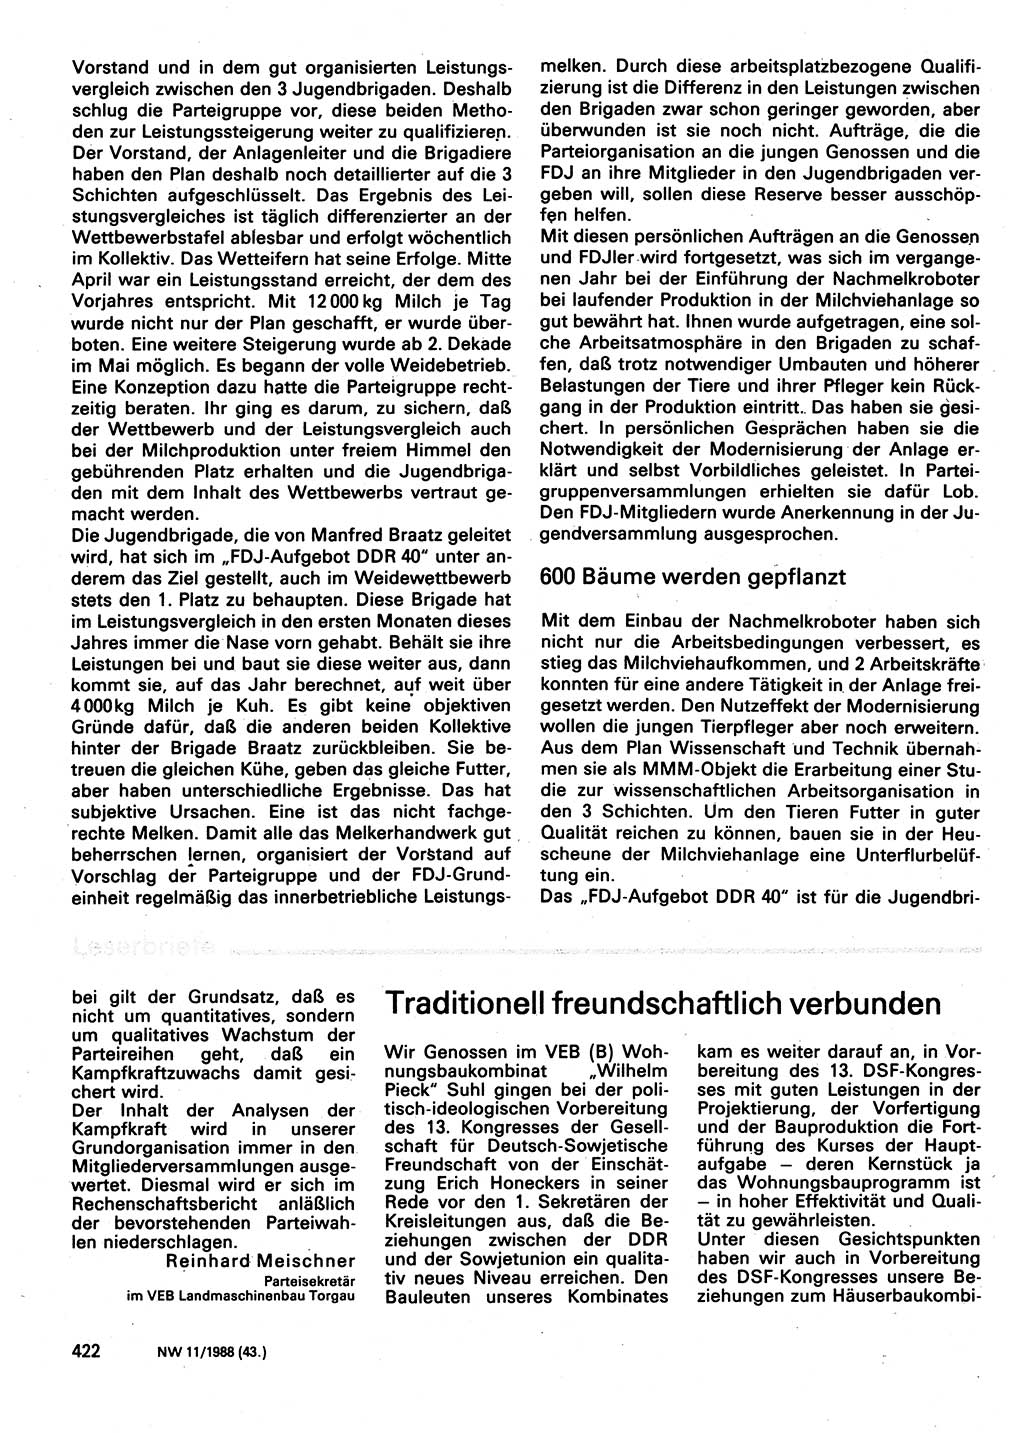 Neuer Weg (NW), Organ des Zentralkomitees (ZK) der SED (Sozialistische Einheitspartei Deutschlands) für Fragen des Parteilebens, 43. Jahrgang [Deutsche Demokratische Republik (DDR)] 1988, Seite 422 (NW ZK SED DDR 1988, S. 422)